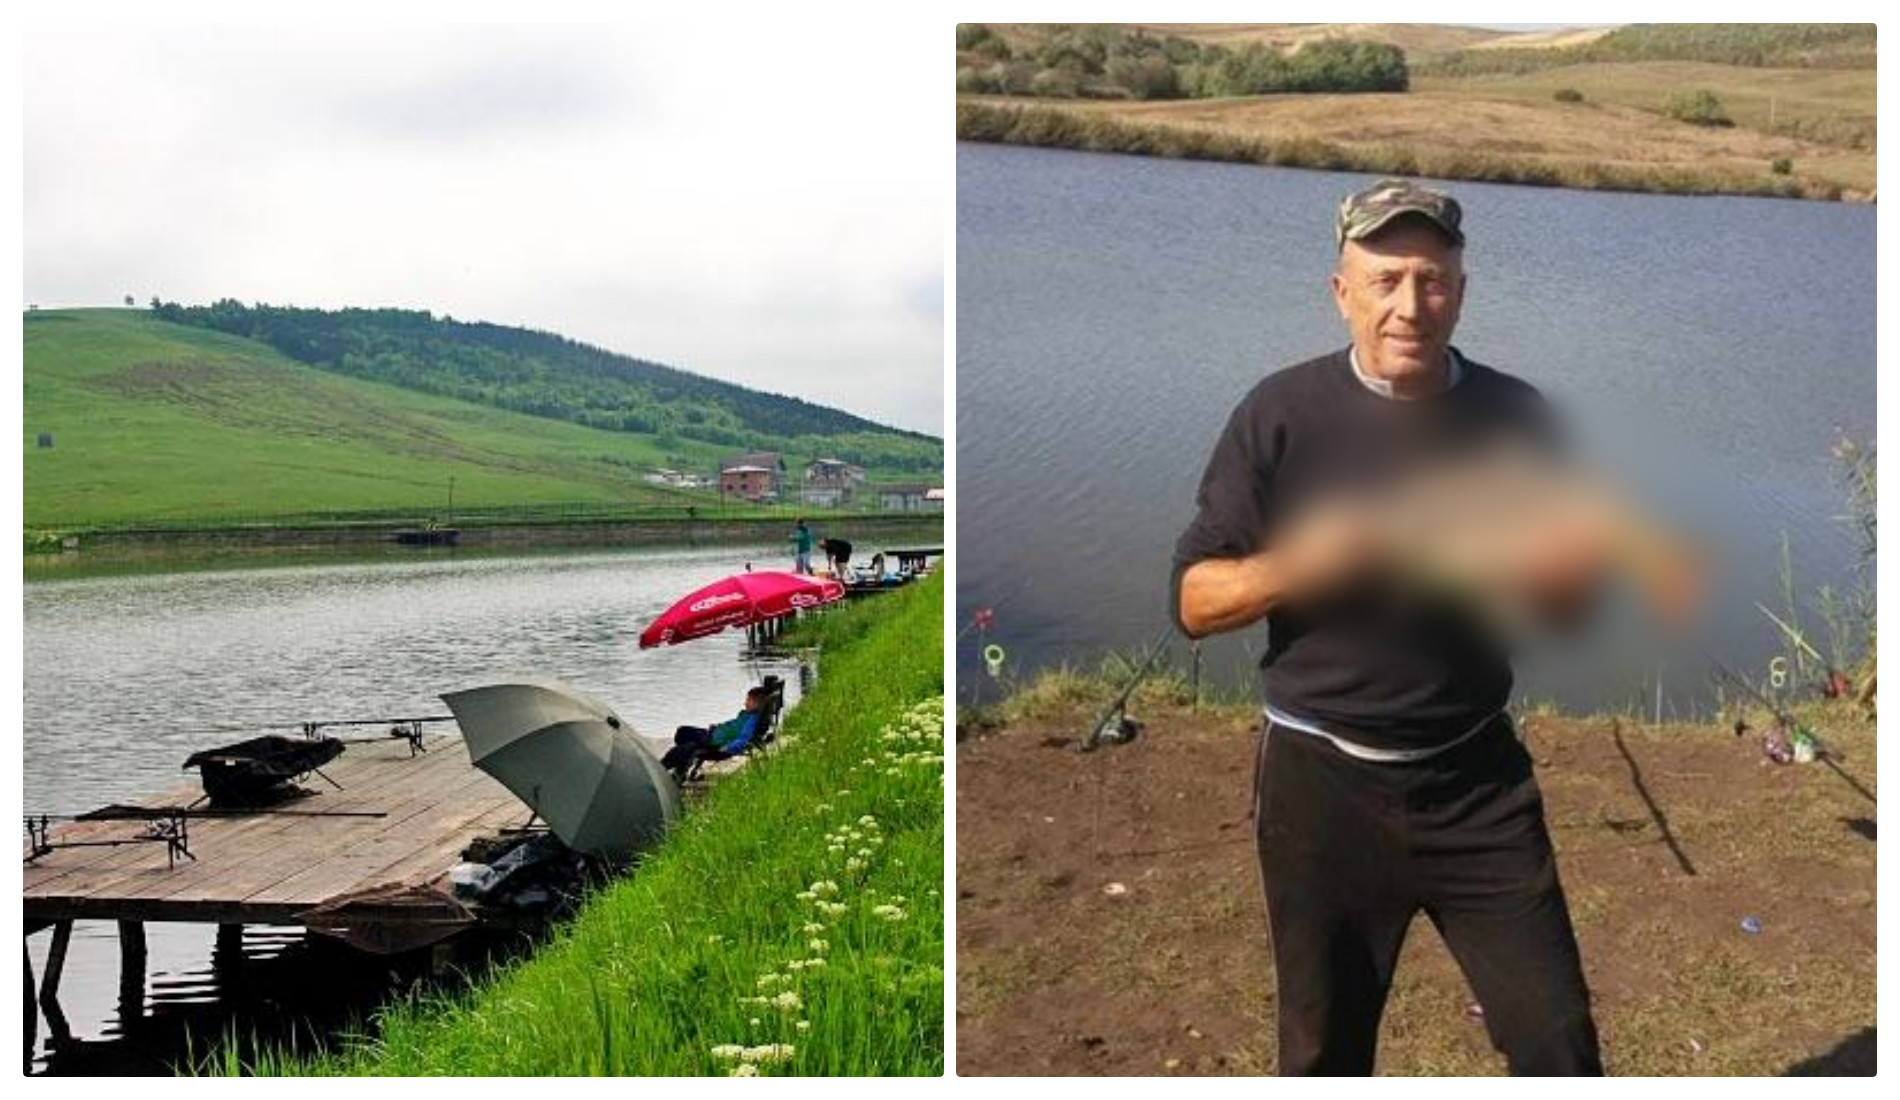 Bărbat dispărut pe lacul din Câmpenești! Rudele îl caută și cer ajutorul celor care l-au văzut - FOTO